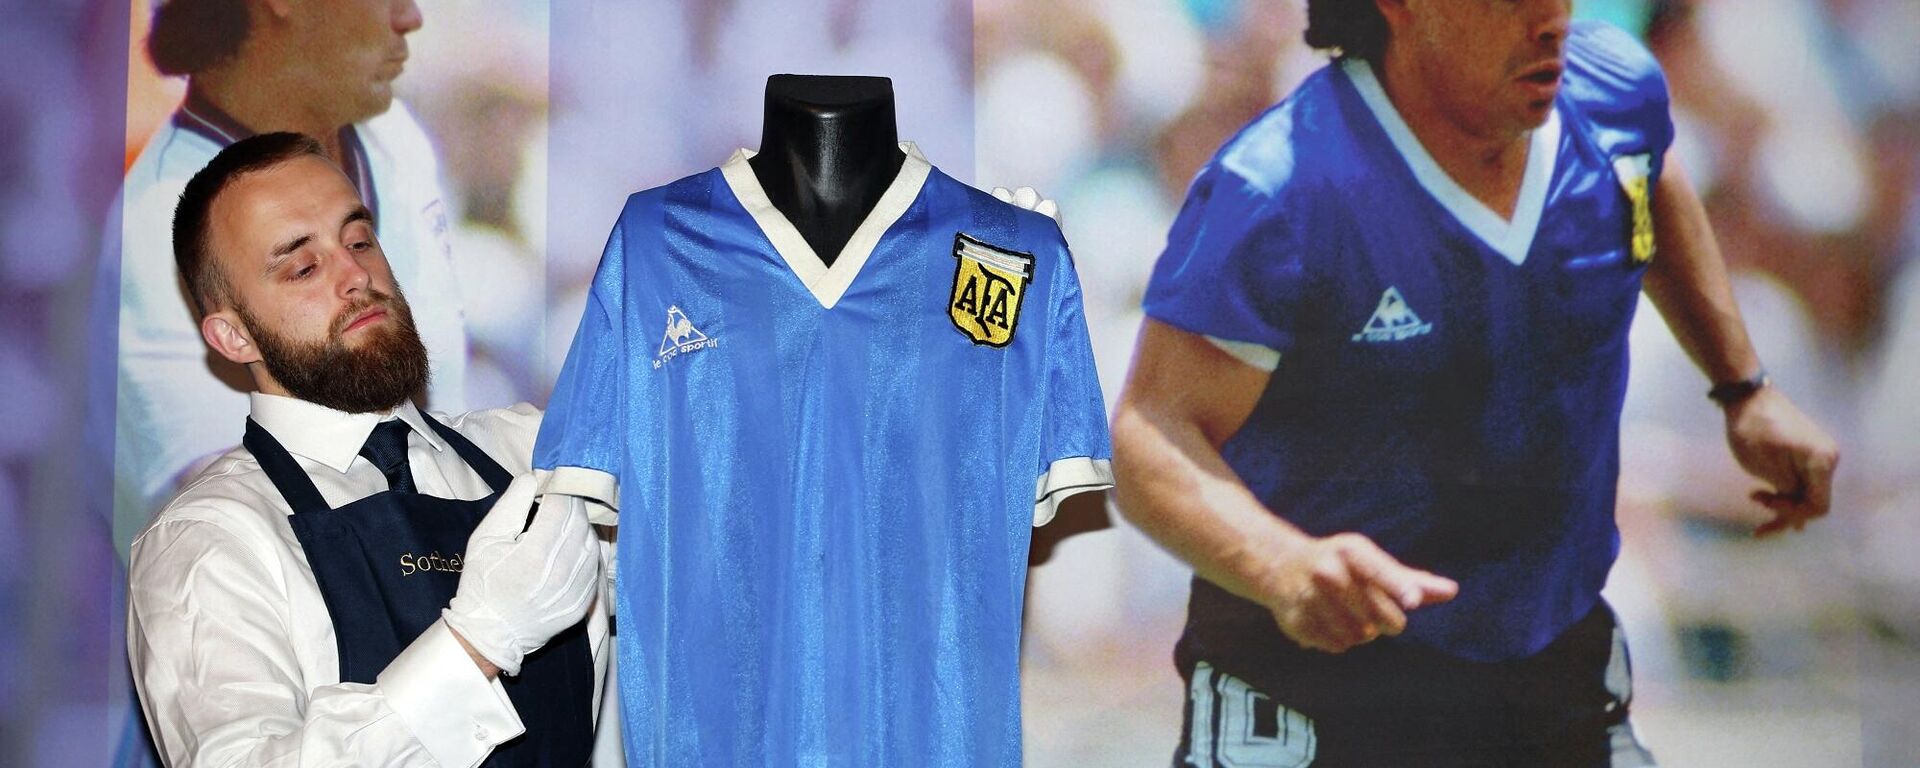 Maradona'nın 'Tanrı'nın eli' forması - Sputnik Türkiye, 1920, 04.05.2022